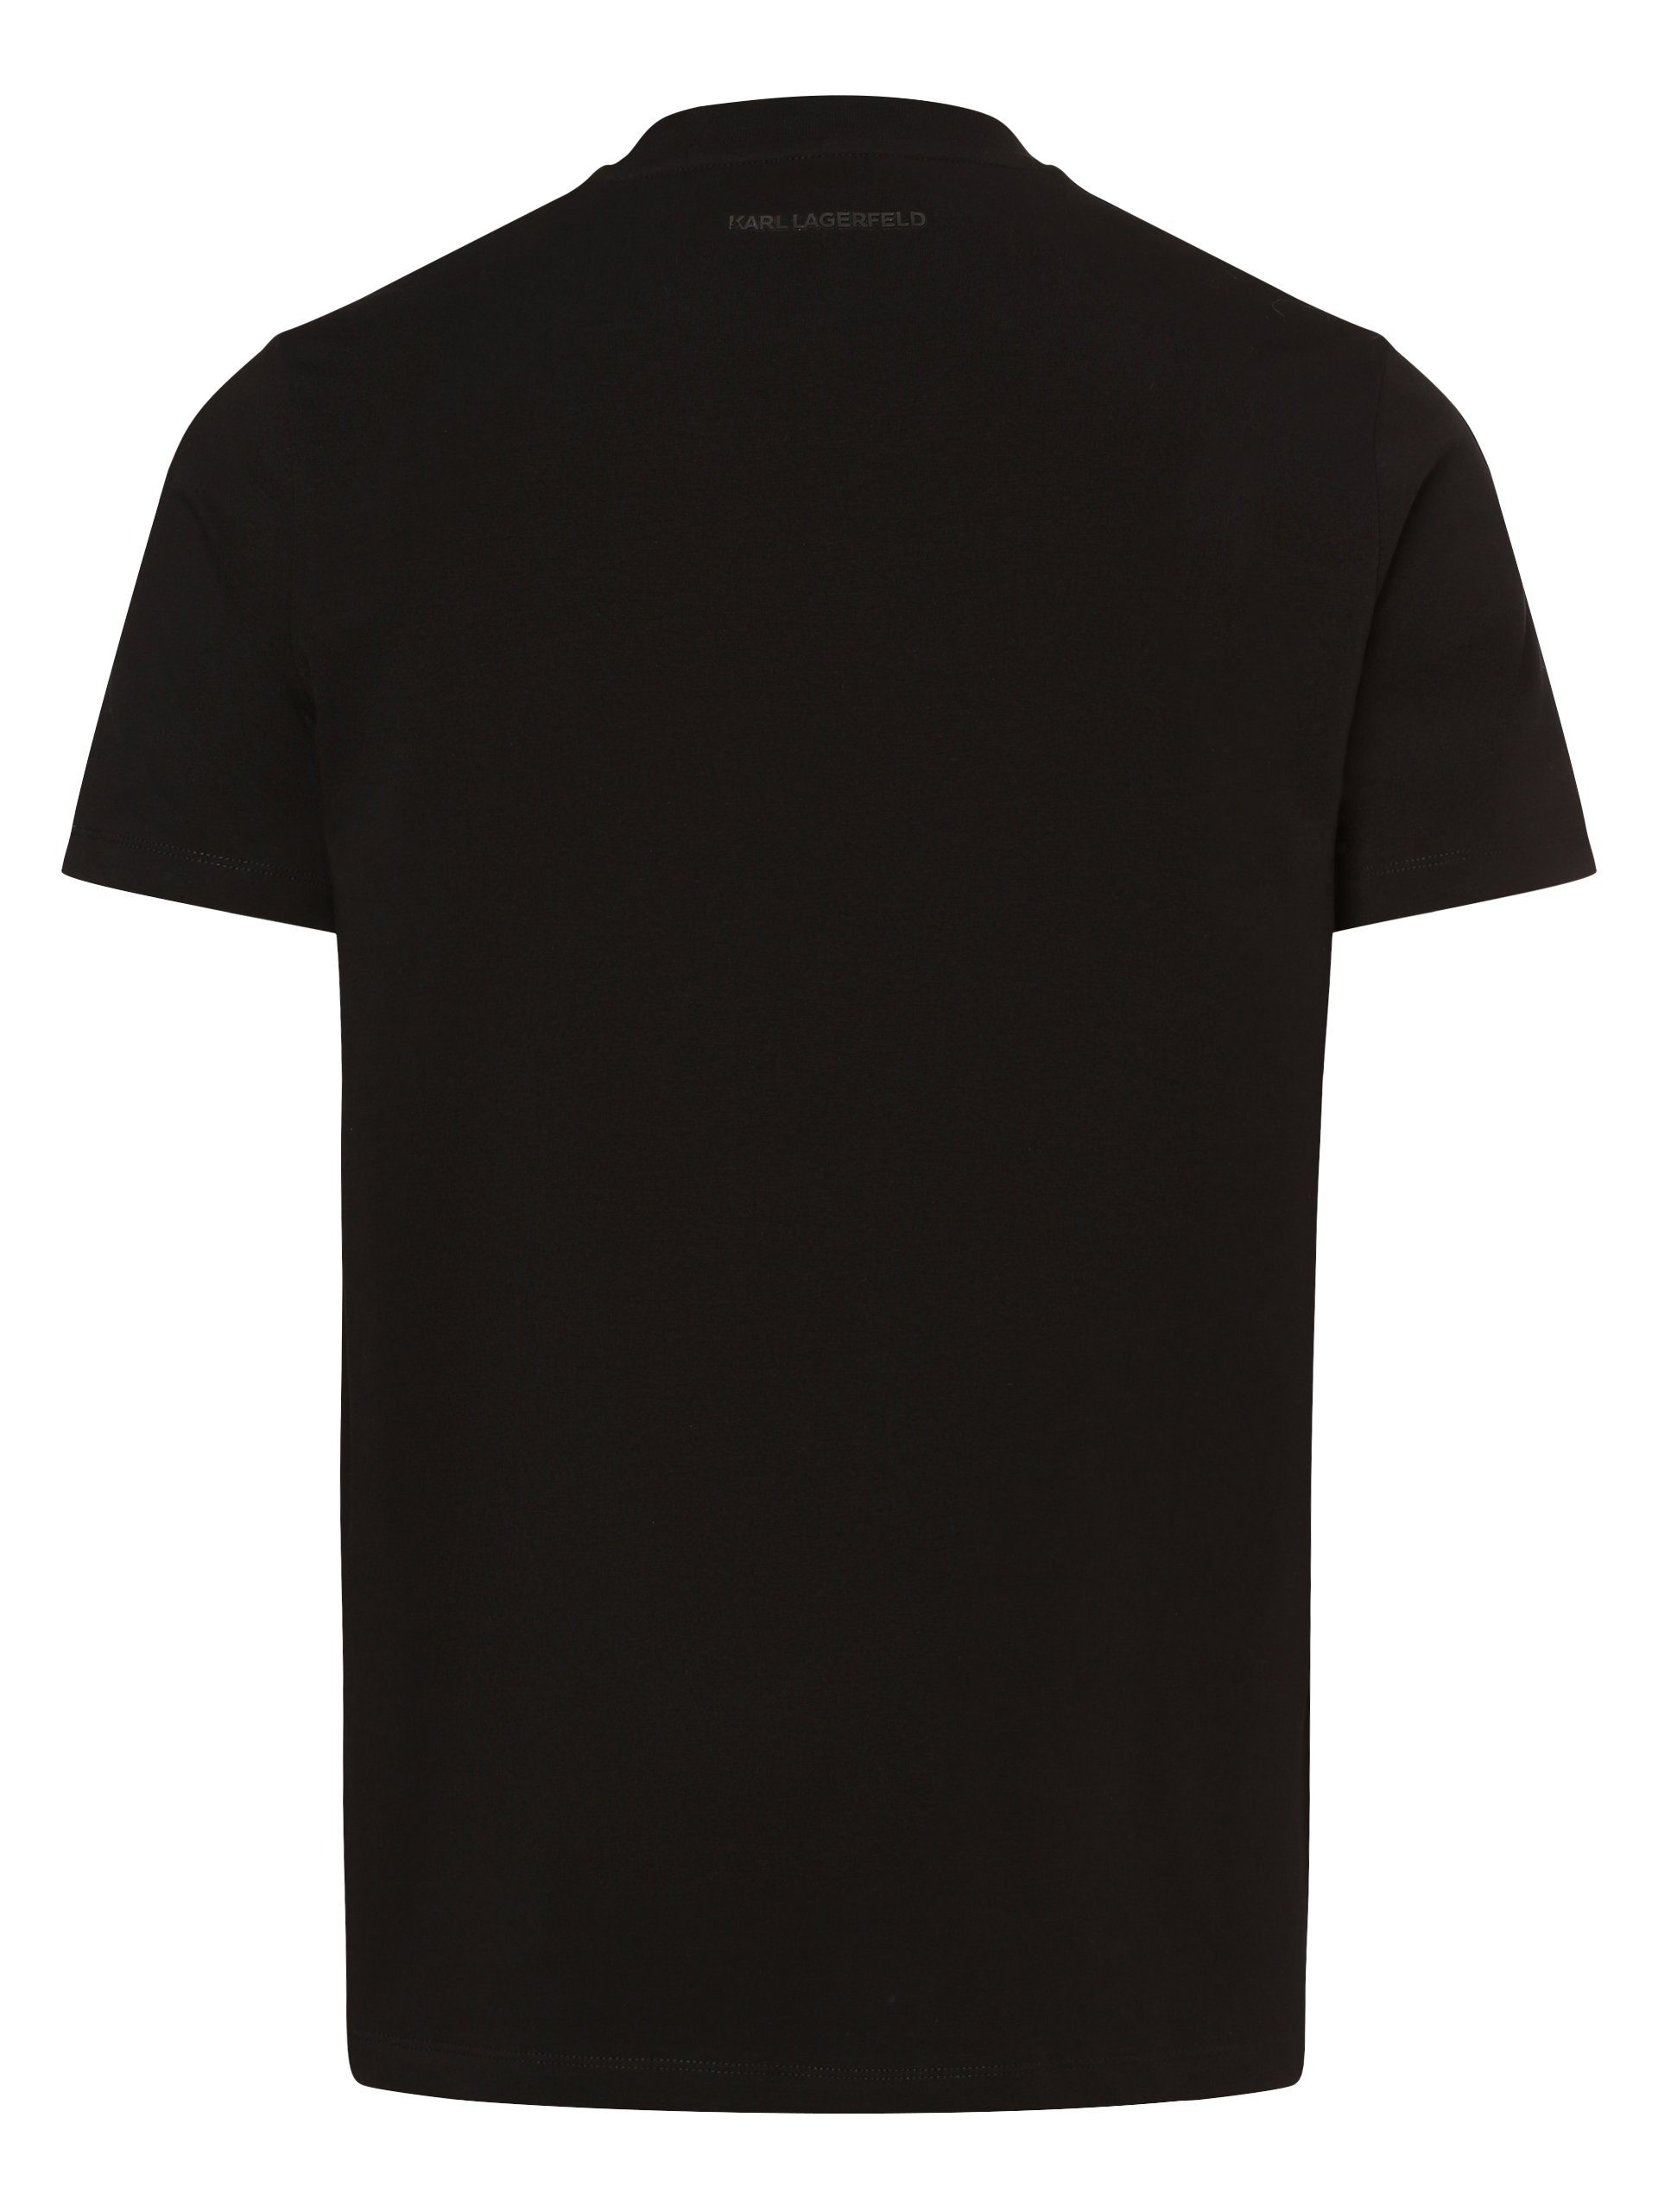 KARL LAGERFELD T-Shirt schwarz roségold